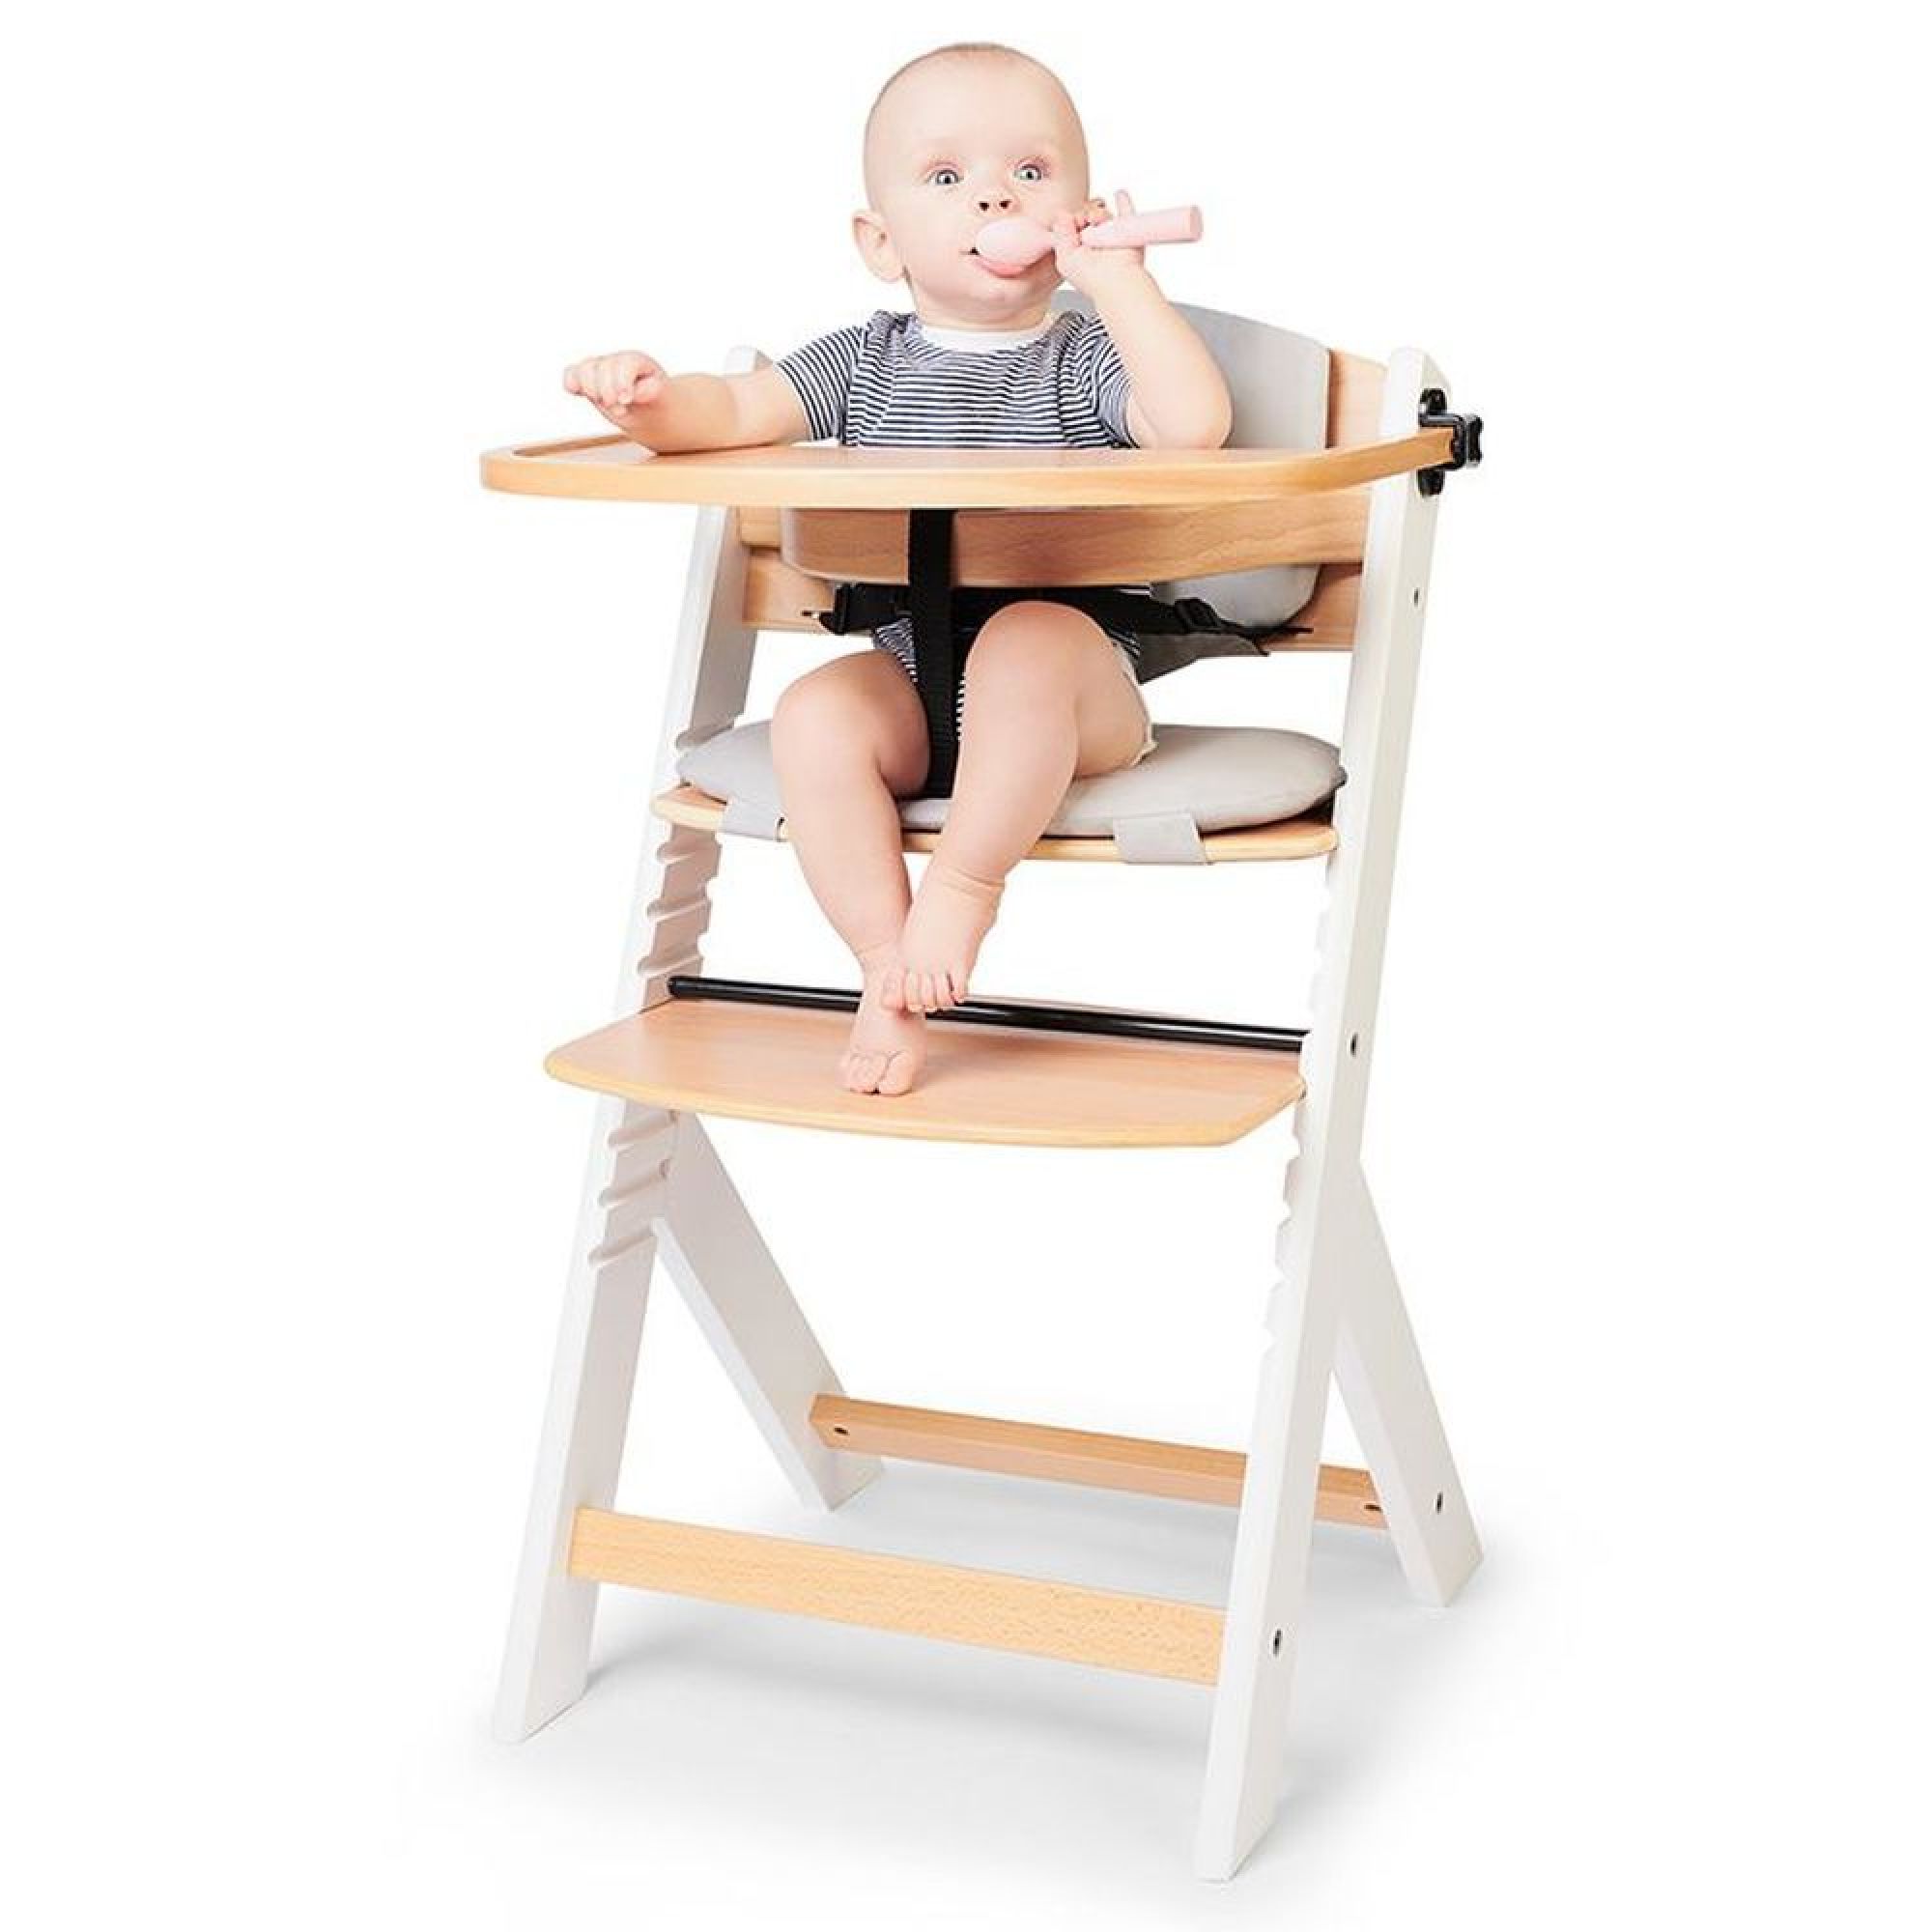 Treppy® Transat nouveau-né pour chaise haute blanc